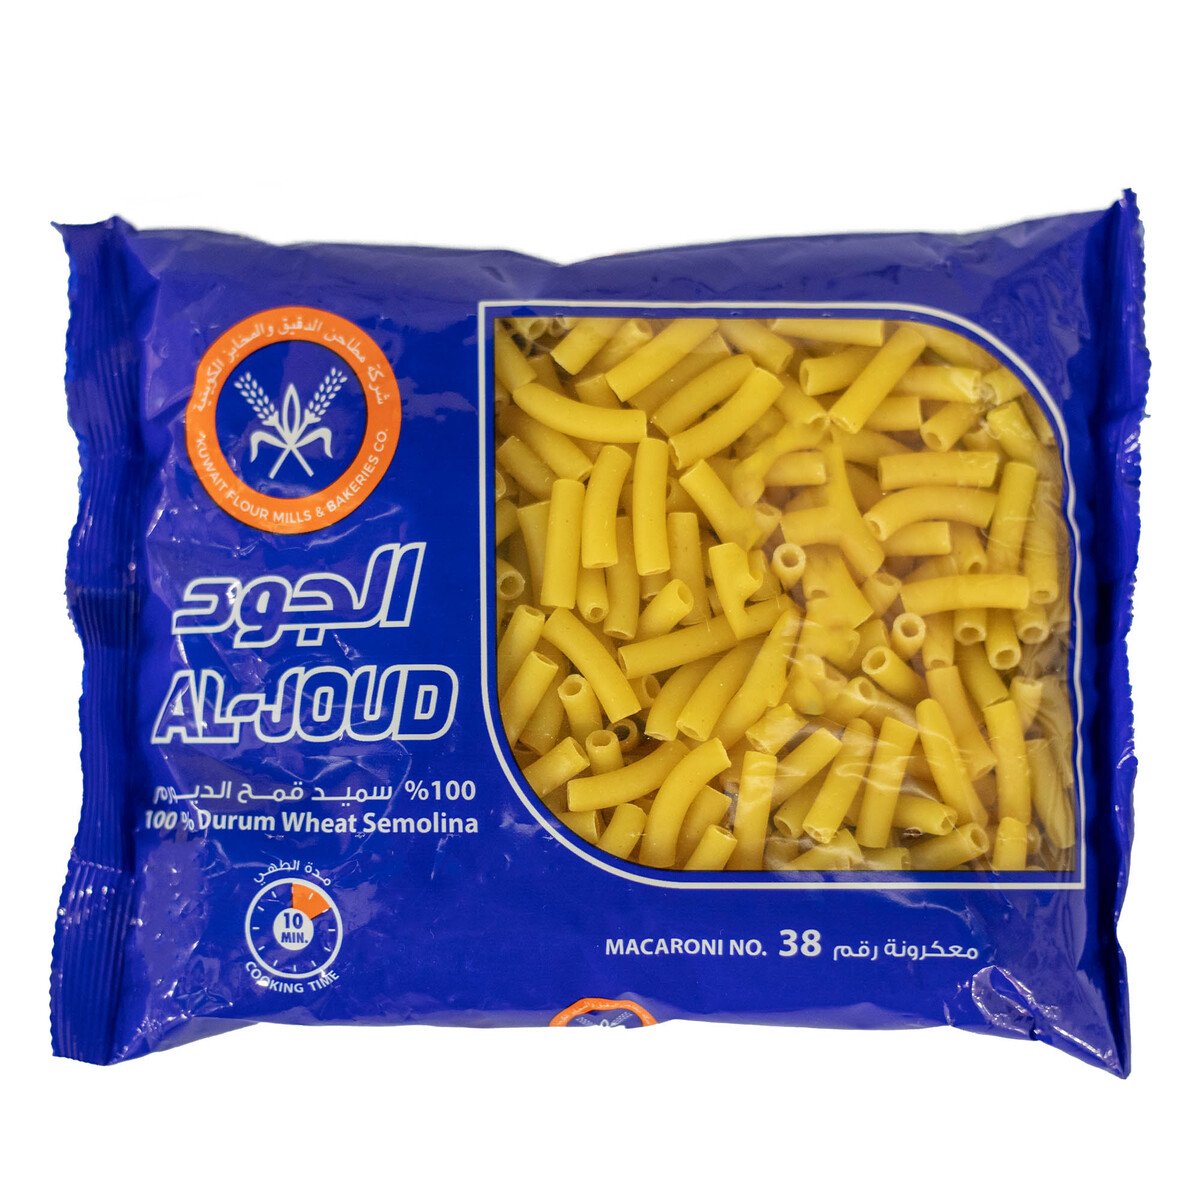 Al Joud Kuwait Macaroni No.38 400 g